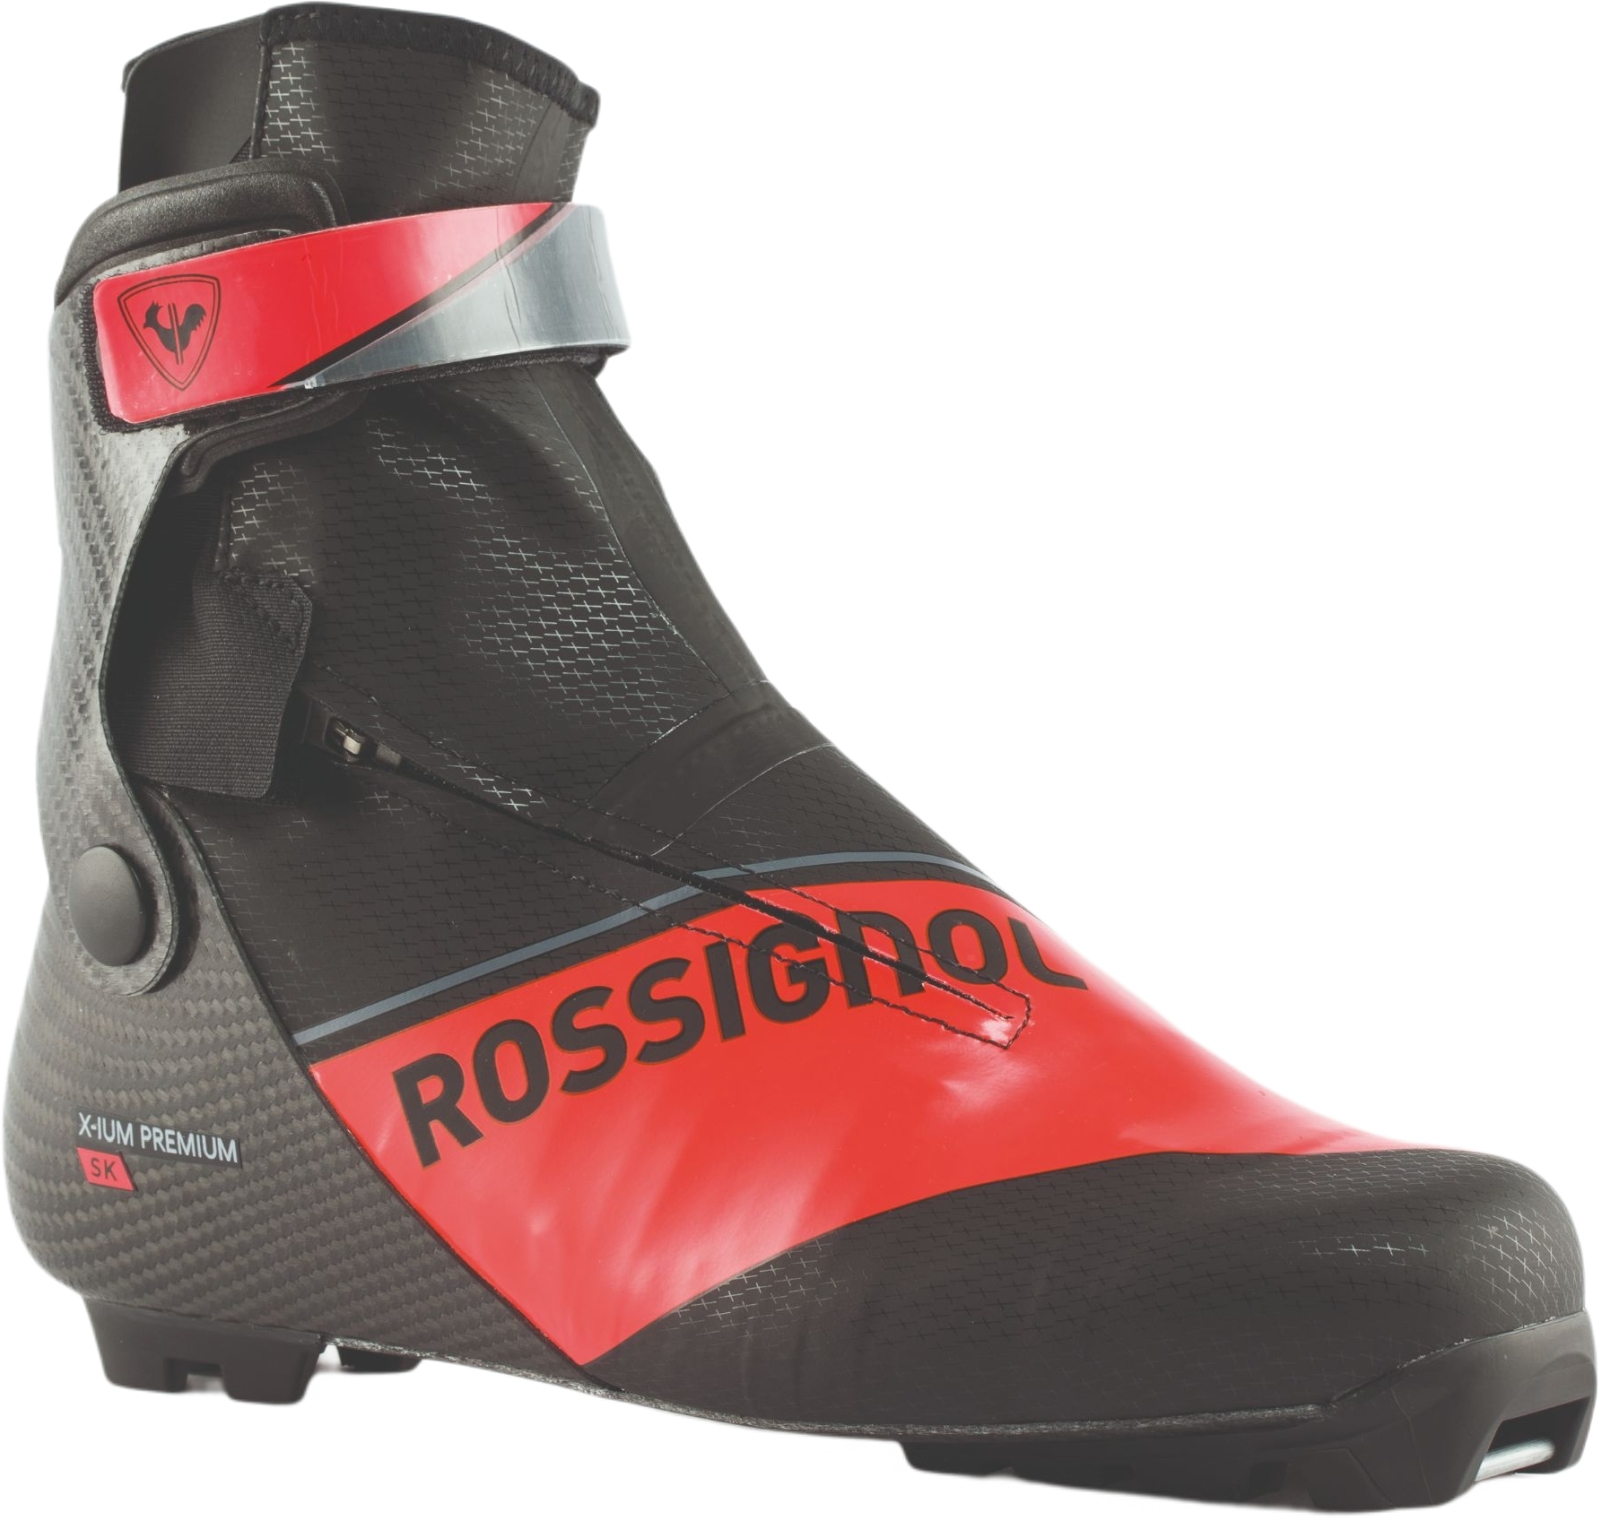 E-shop Rossignol X-IUM Carbon Premium Skate 450